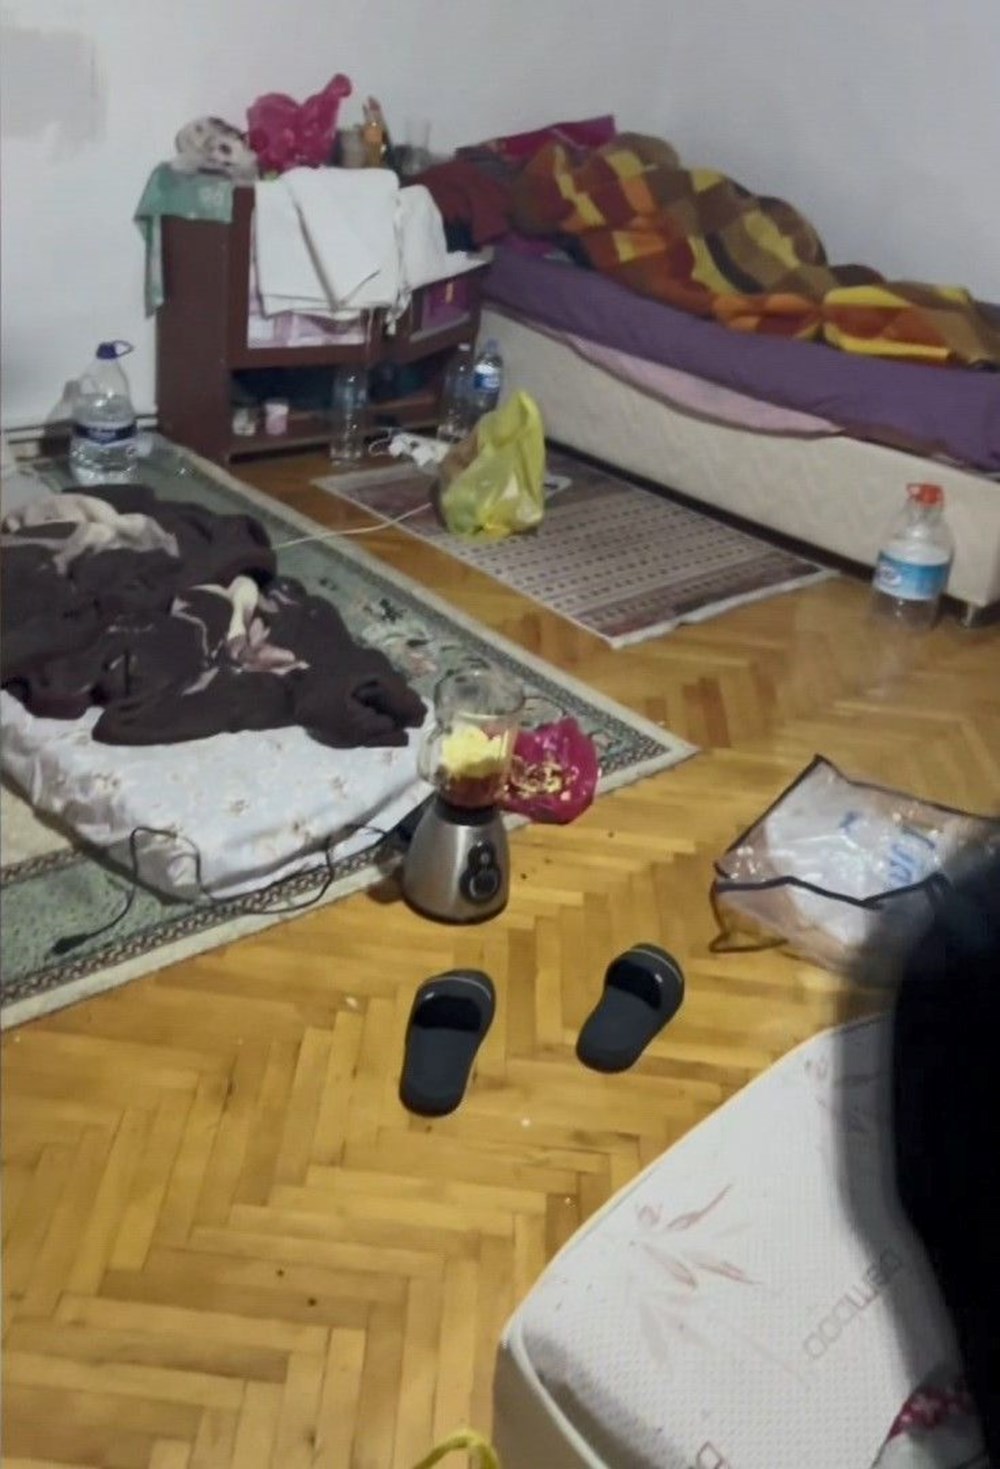 Kiracı
1 odayı 5 kişiye kiraladı: İstanbul'da 50 Euro'ya yer yatağı - 5